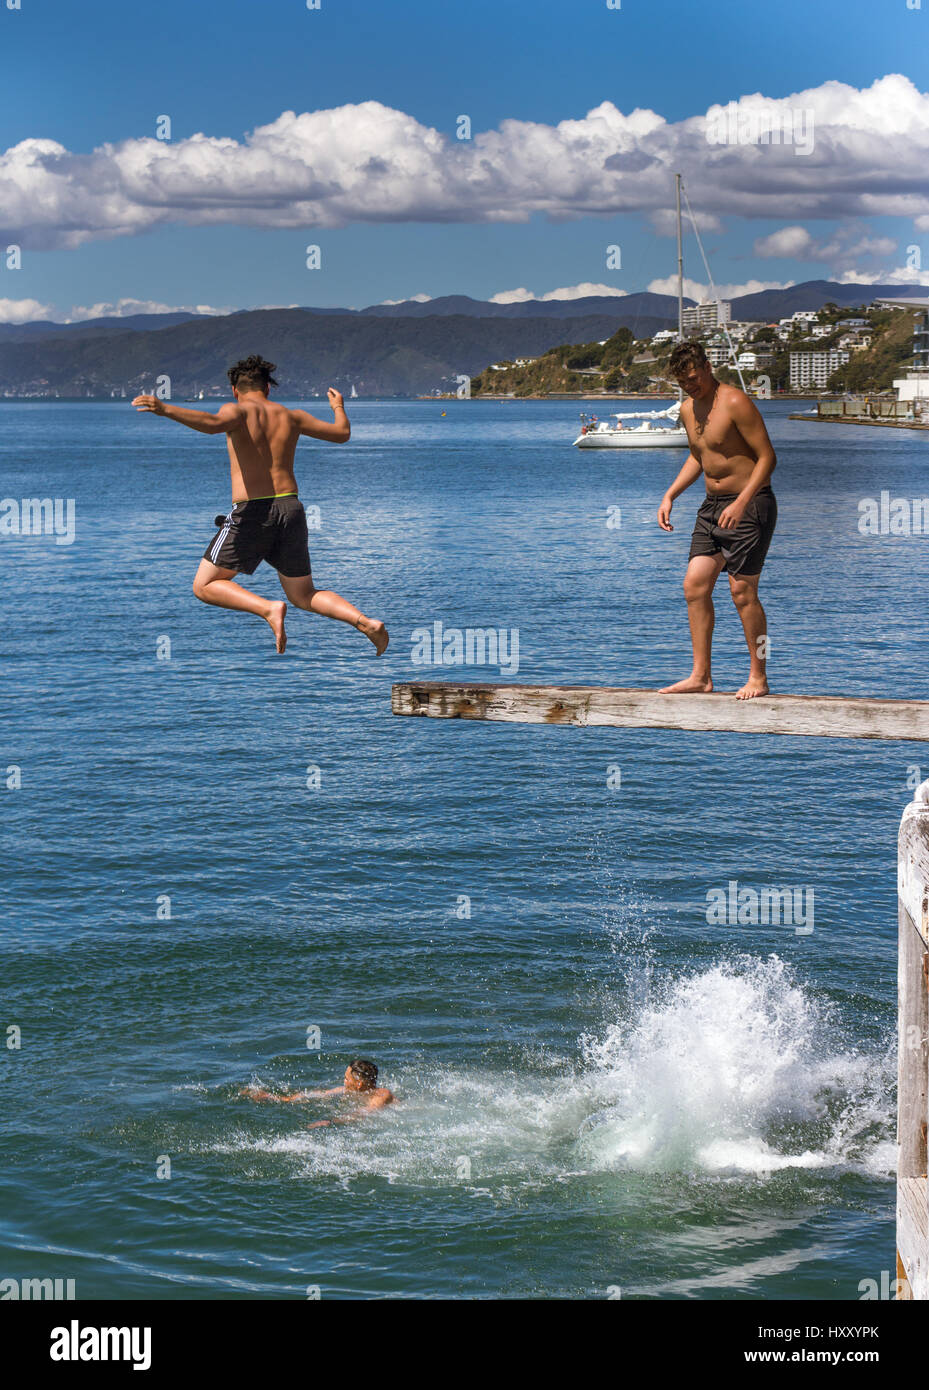 Wellington, New Zealand - 11. Februar 2017: Wellington Waterfront mit Jugendlichen springen von einem Sprungbrett in der Nähe von Frank Kitts Park und Lagune Brücke. Stockfoto